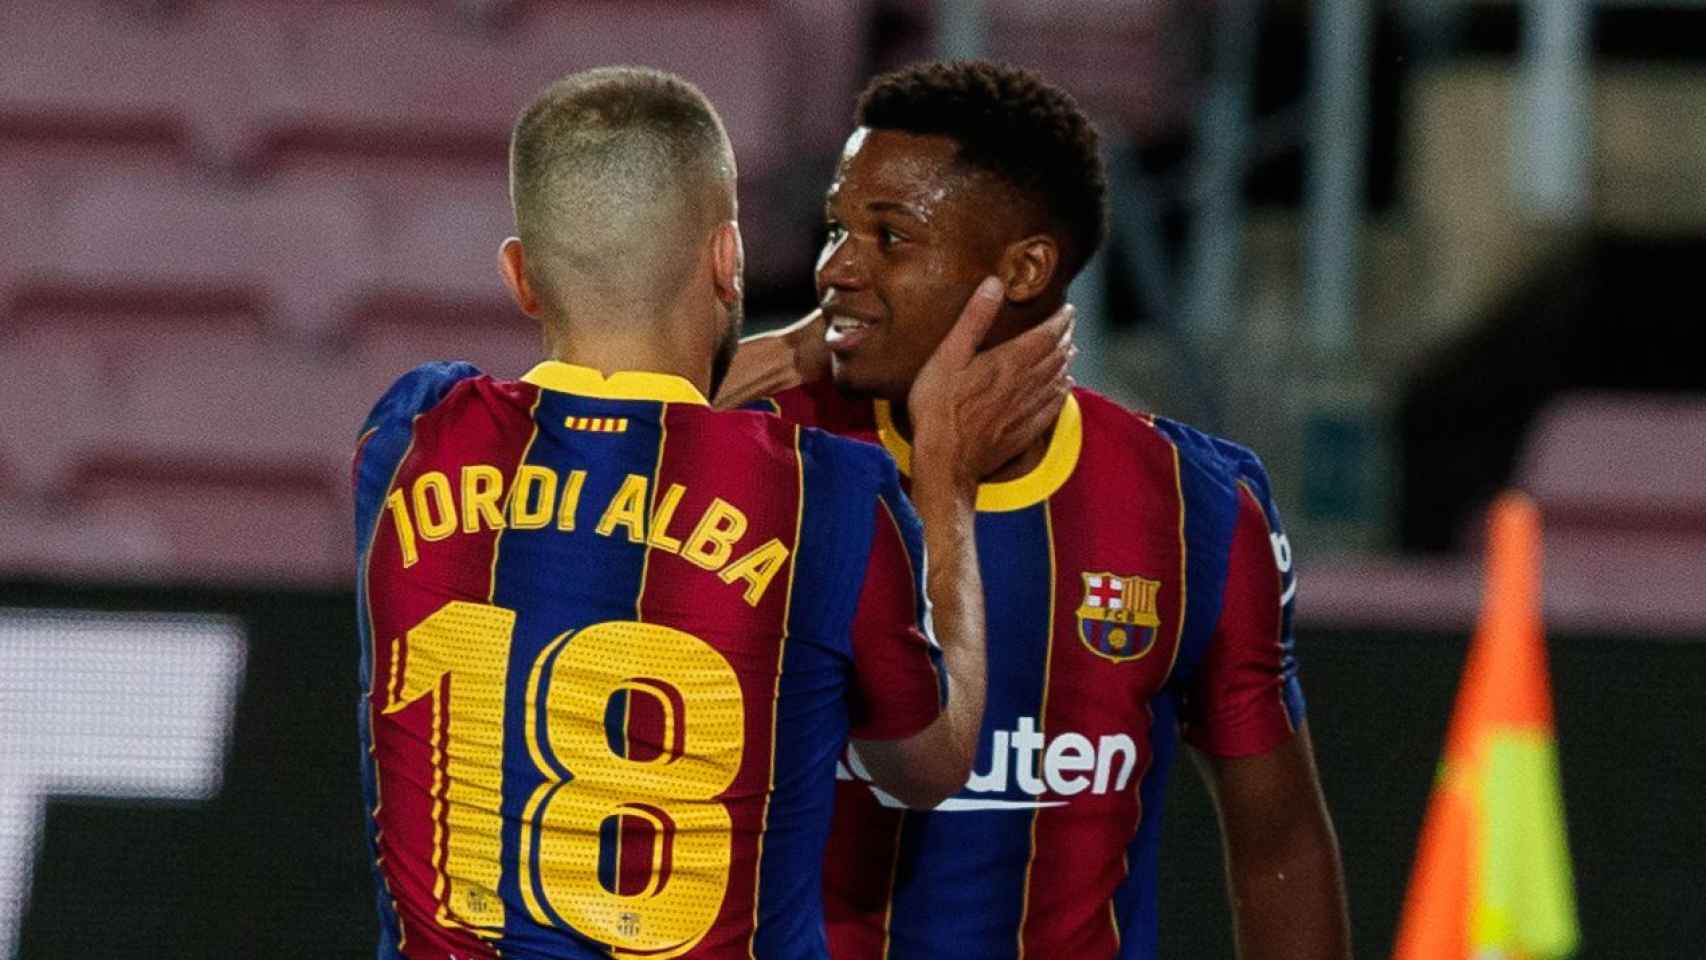 Ansu Fati celebra un gol con el Barcelona